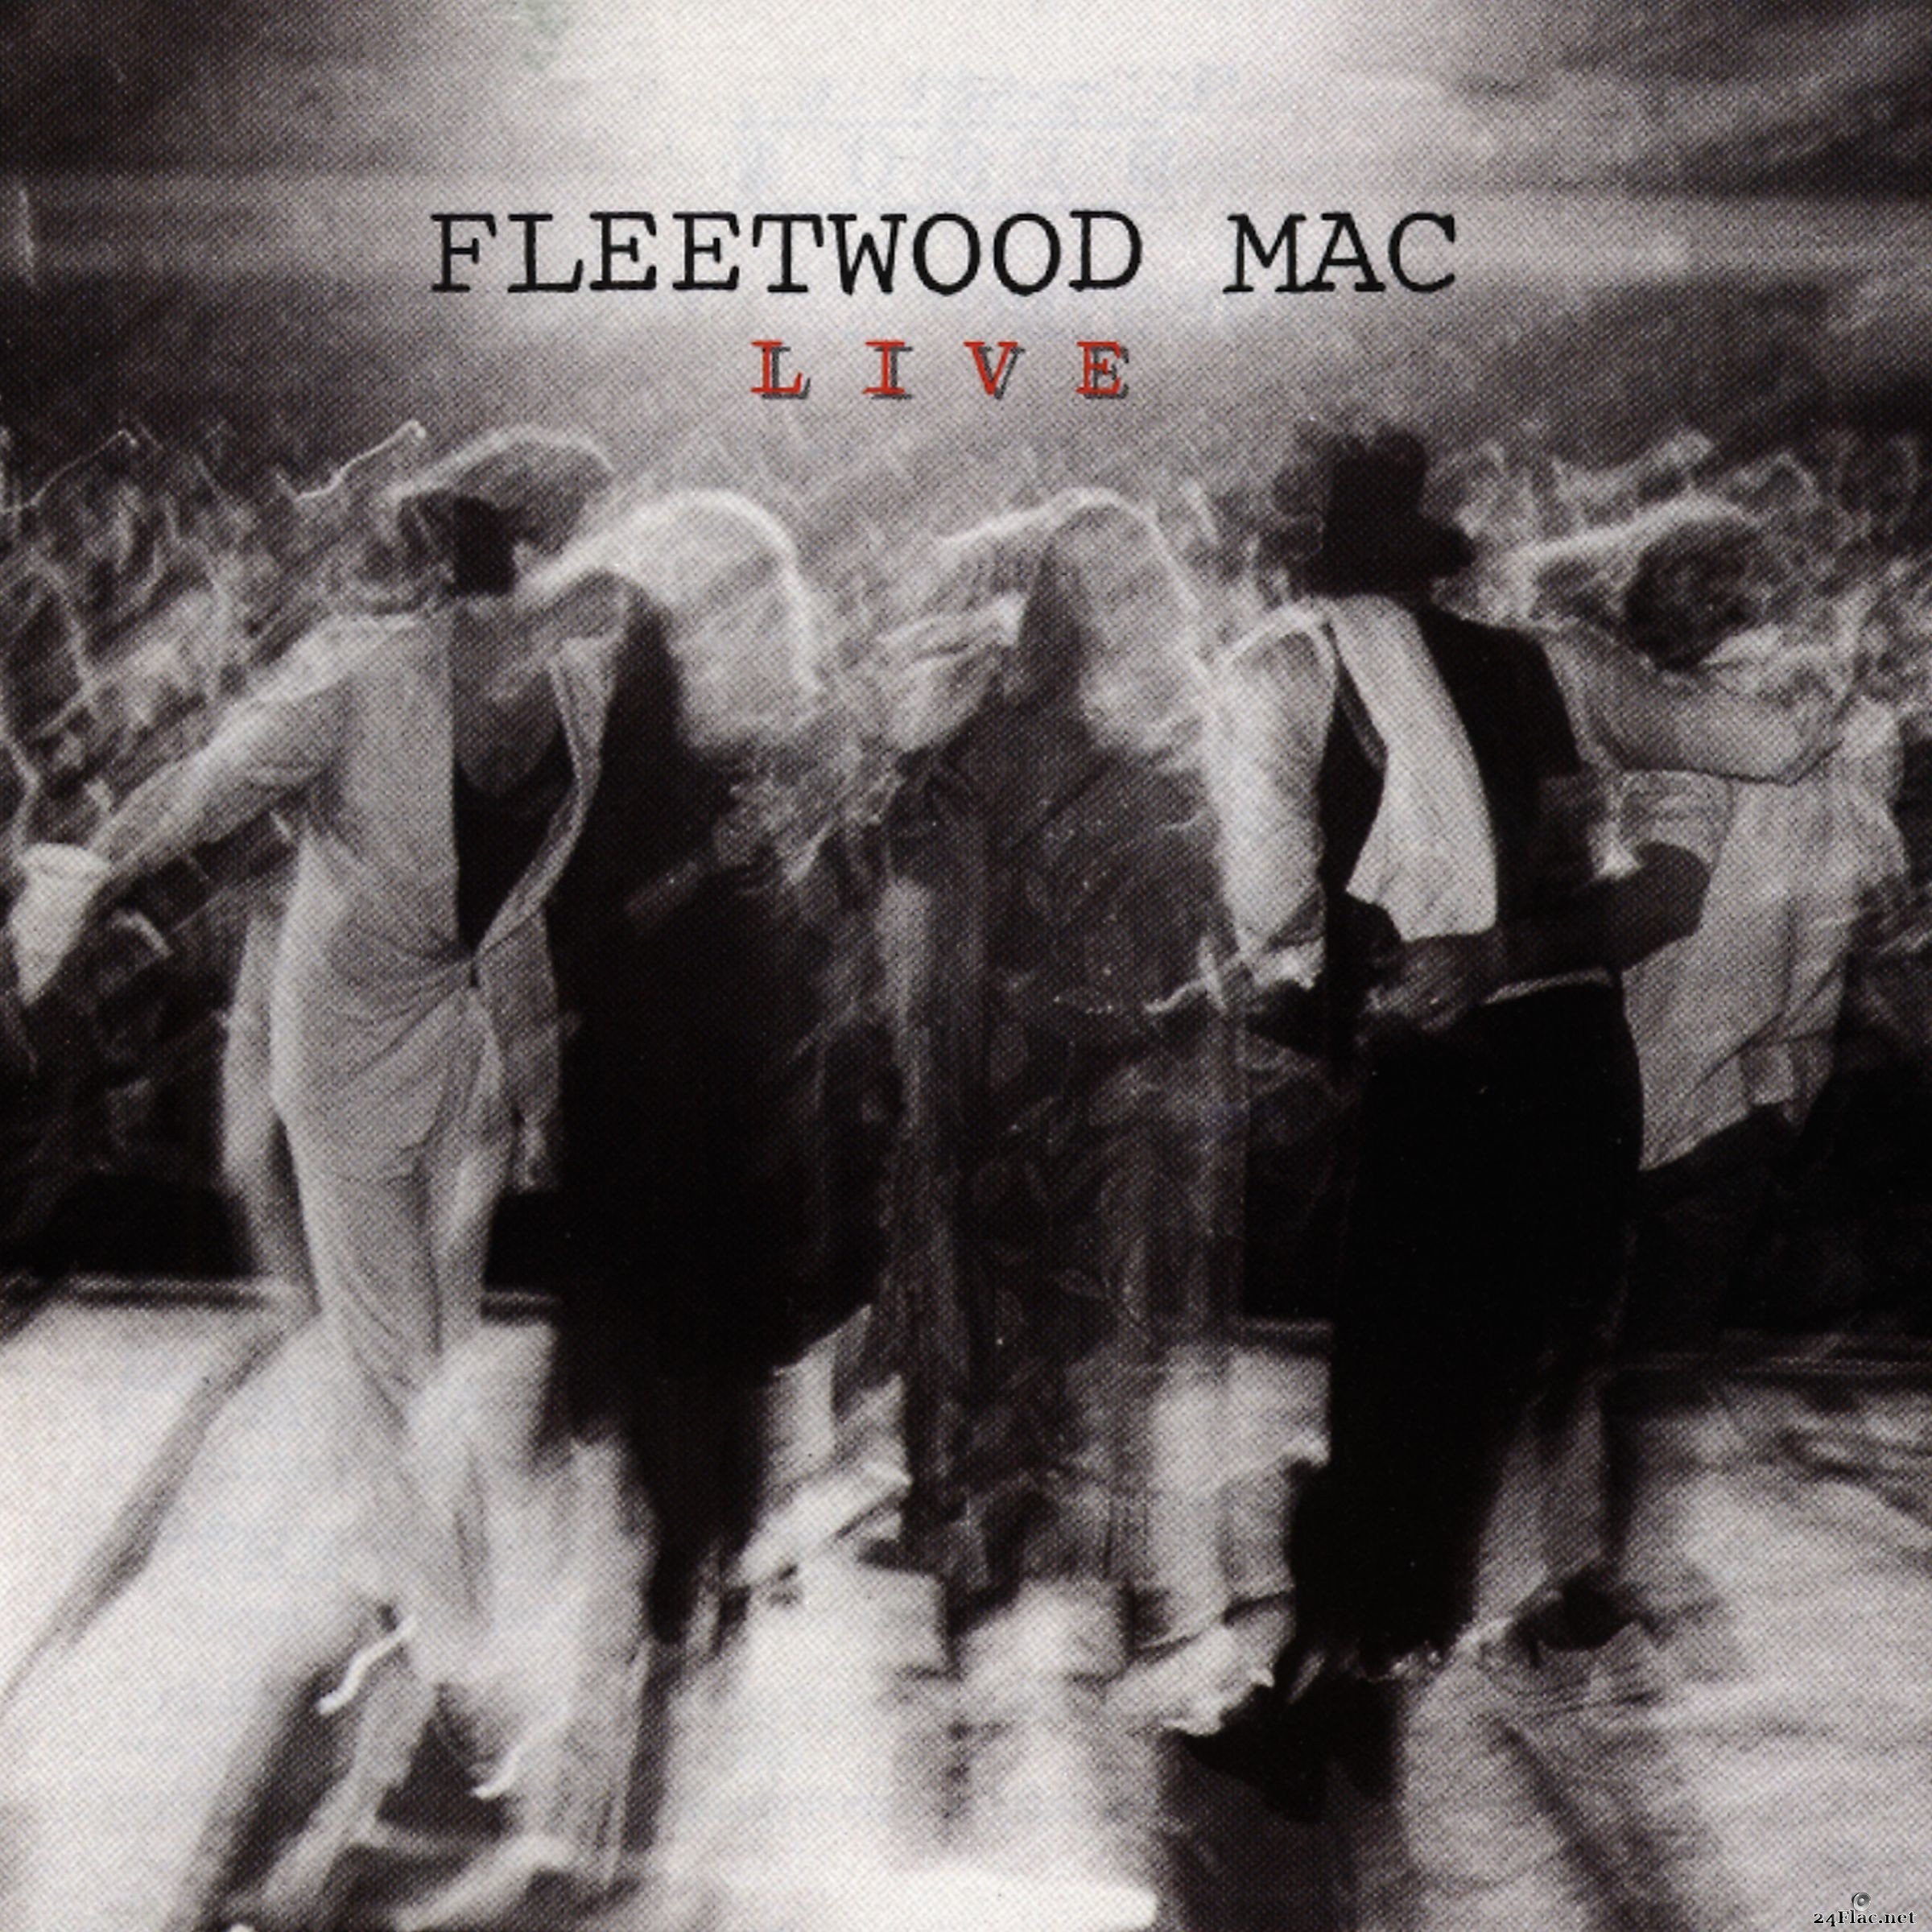 Fleetwood Mac - Live (Hi-Res Remaster) (2013) FLAC + Hi-Res